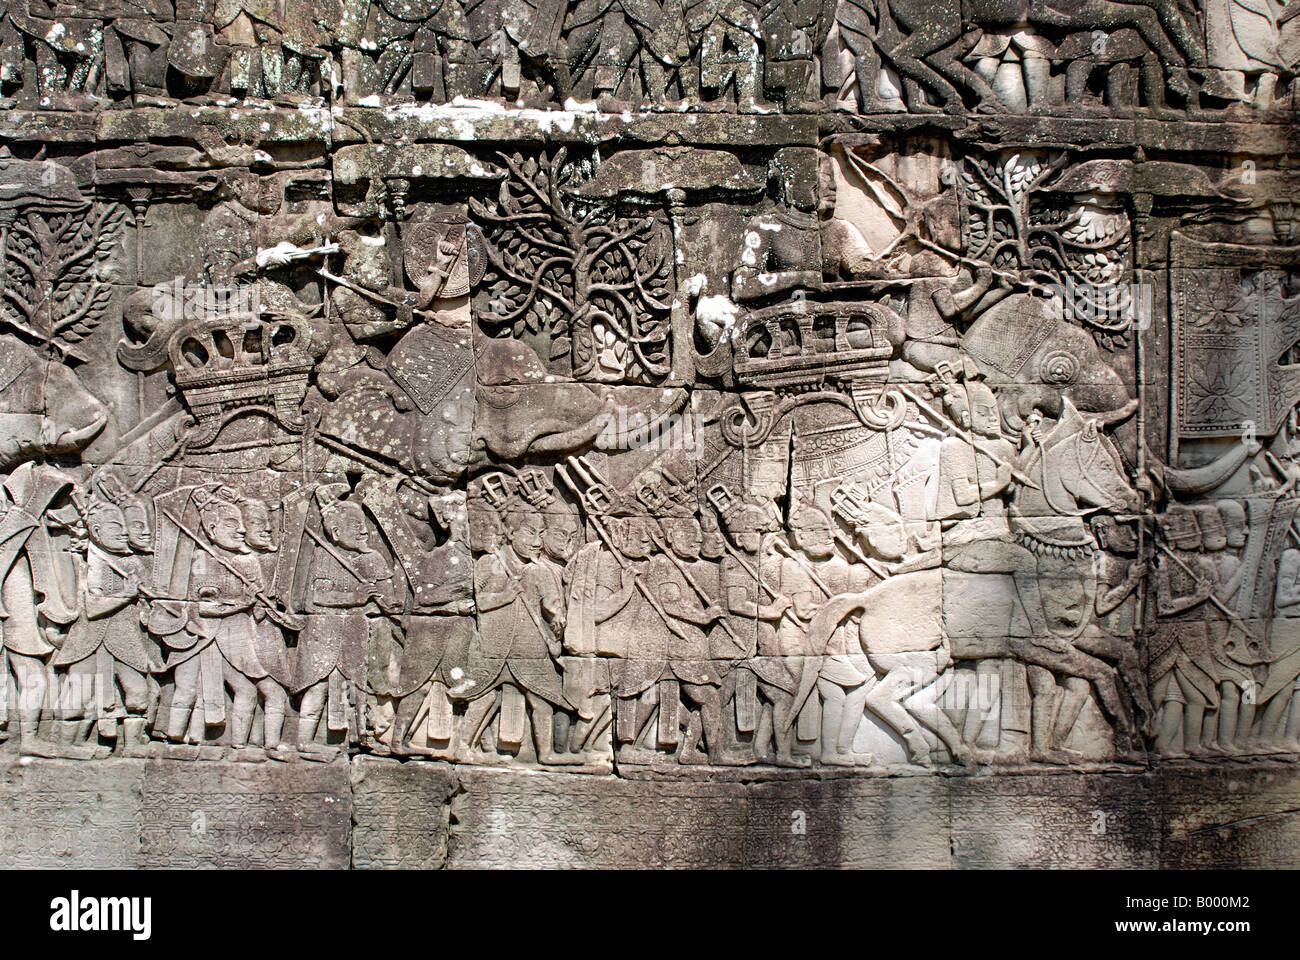 Kambodscha, Angkor Thom, spätes 12. Jahrhundert n. Chr. Armee auf dem Marsch. Südlichen Teil der Außengalerie. Stockfoto